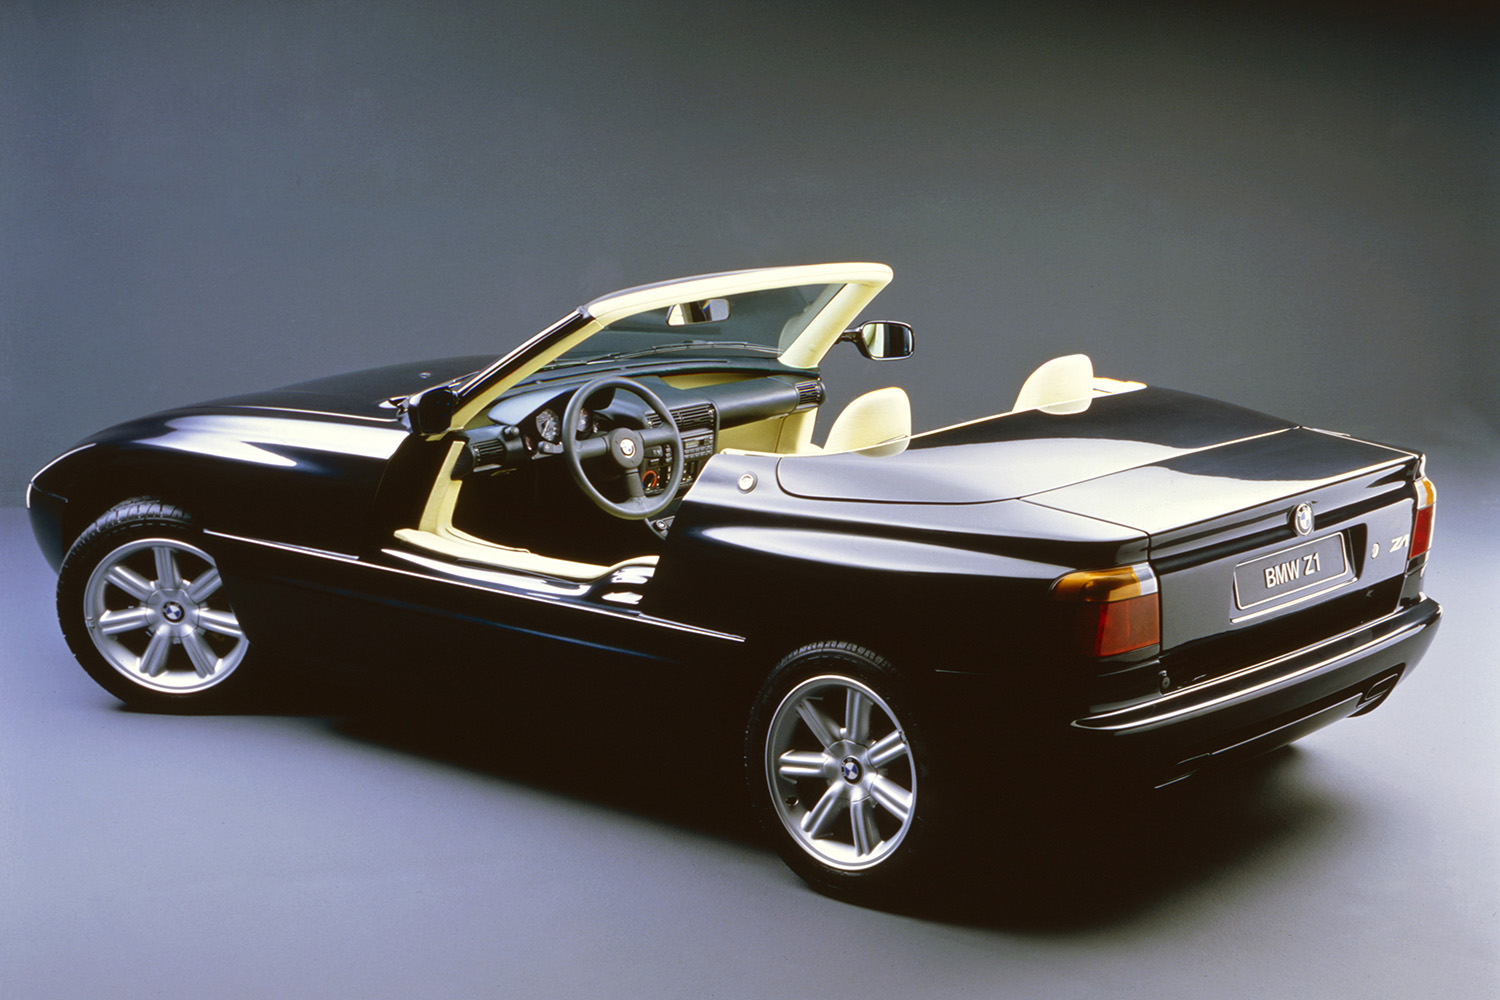 BMWの未来が託された「Z1」という奇抜すぎたロードスター 〜 画像31